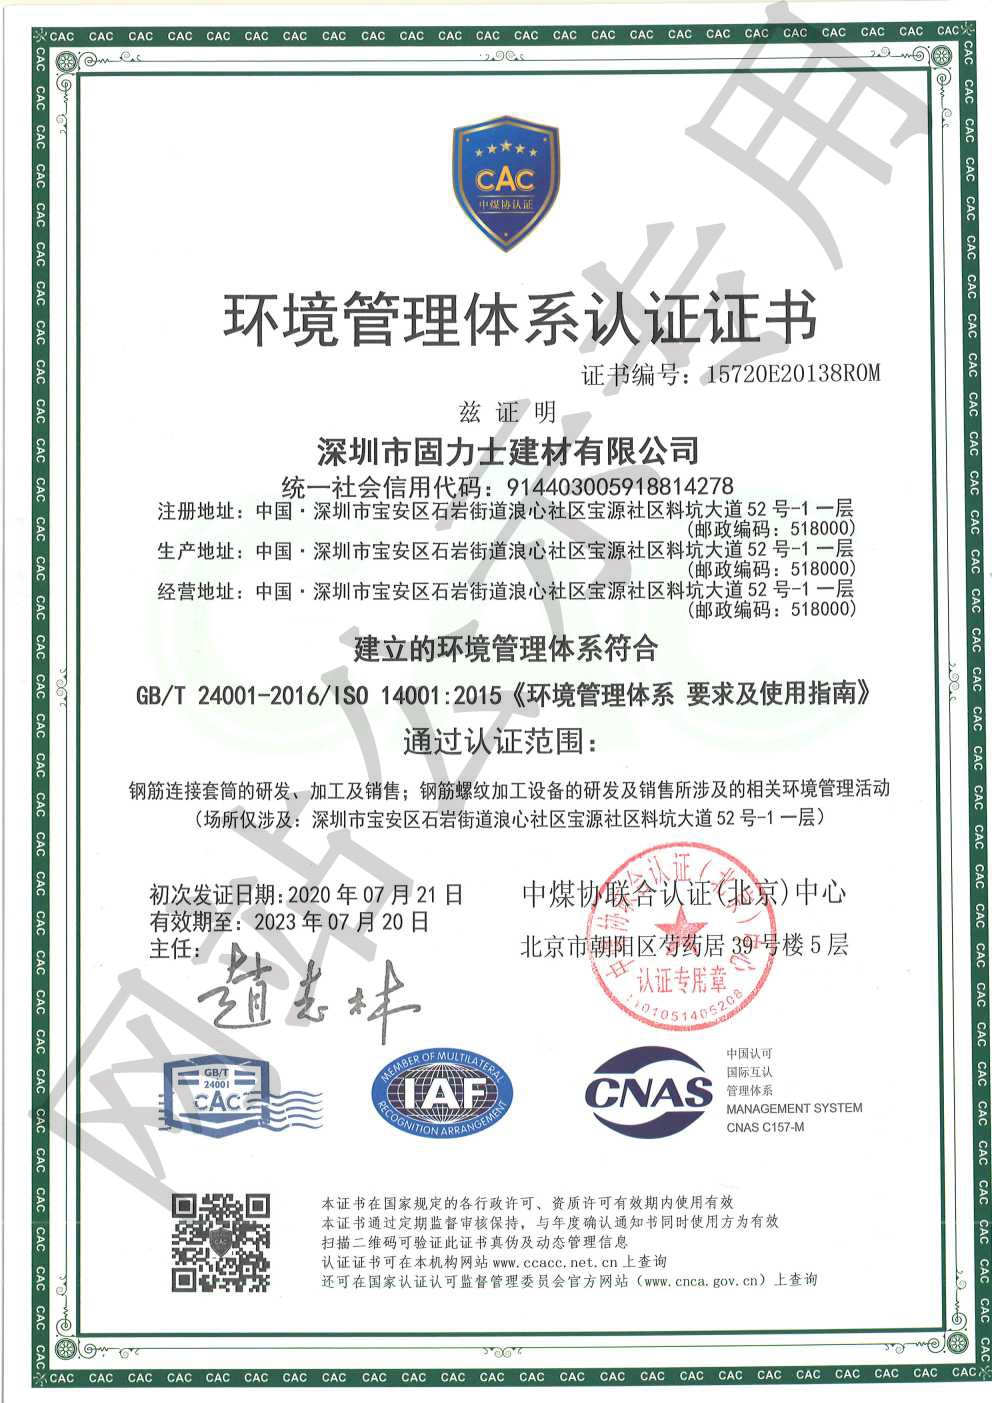 旺苍ISO14001证书